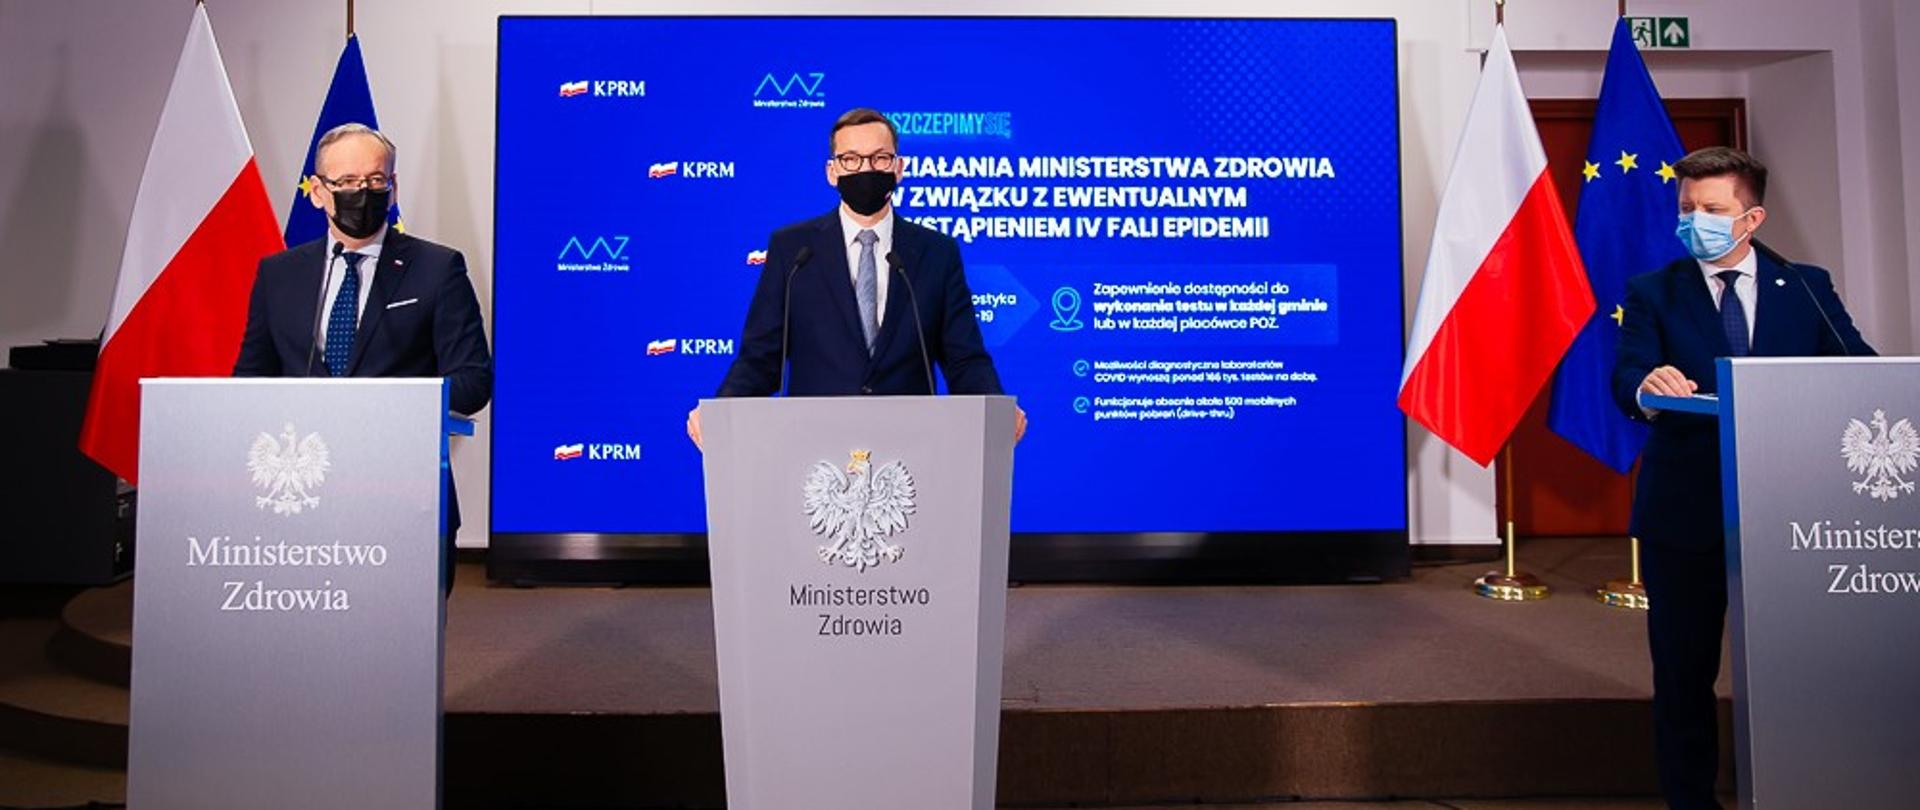 Premier Mateusz Morawiecki, minister zdrowia Adam Niedzielski oraz szef KPRM Michał Dworczyk podczas konferencji prasowej